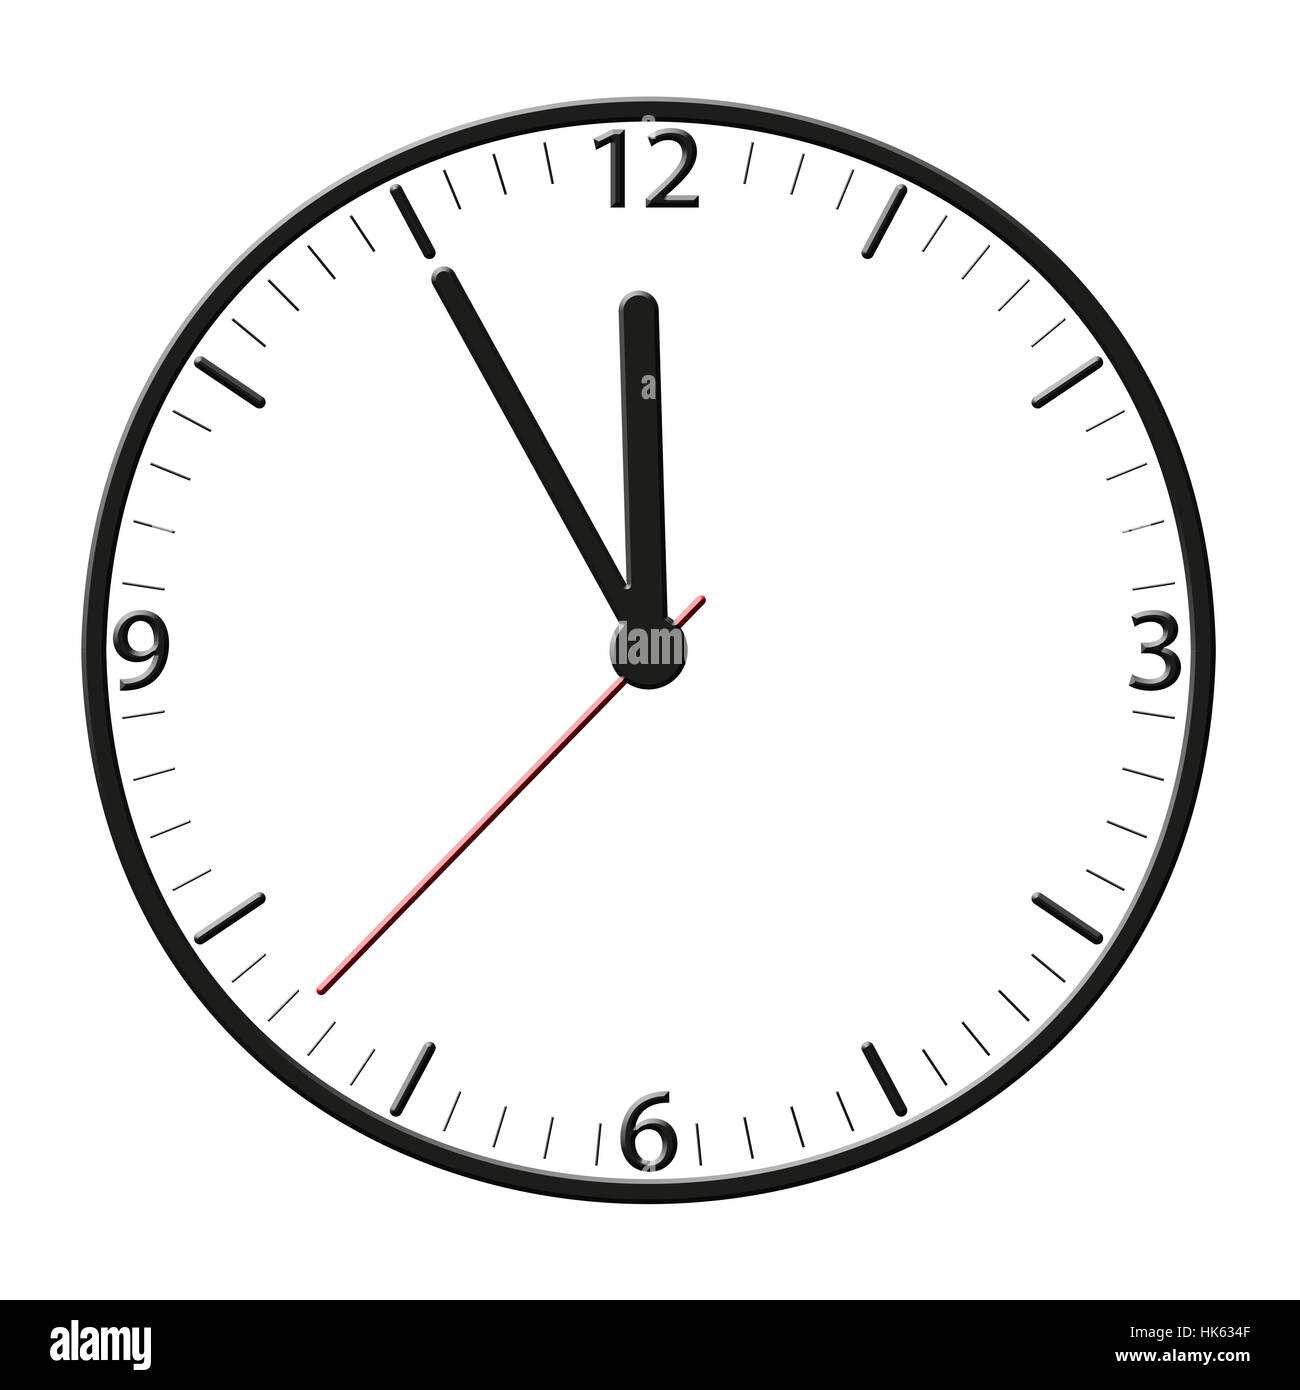 Тайминг. Date Clock. Hour minute second. Время 5. 8 55 на часах